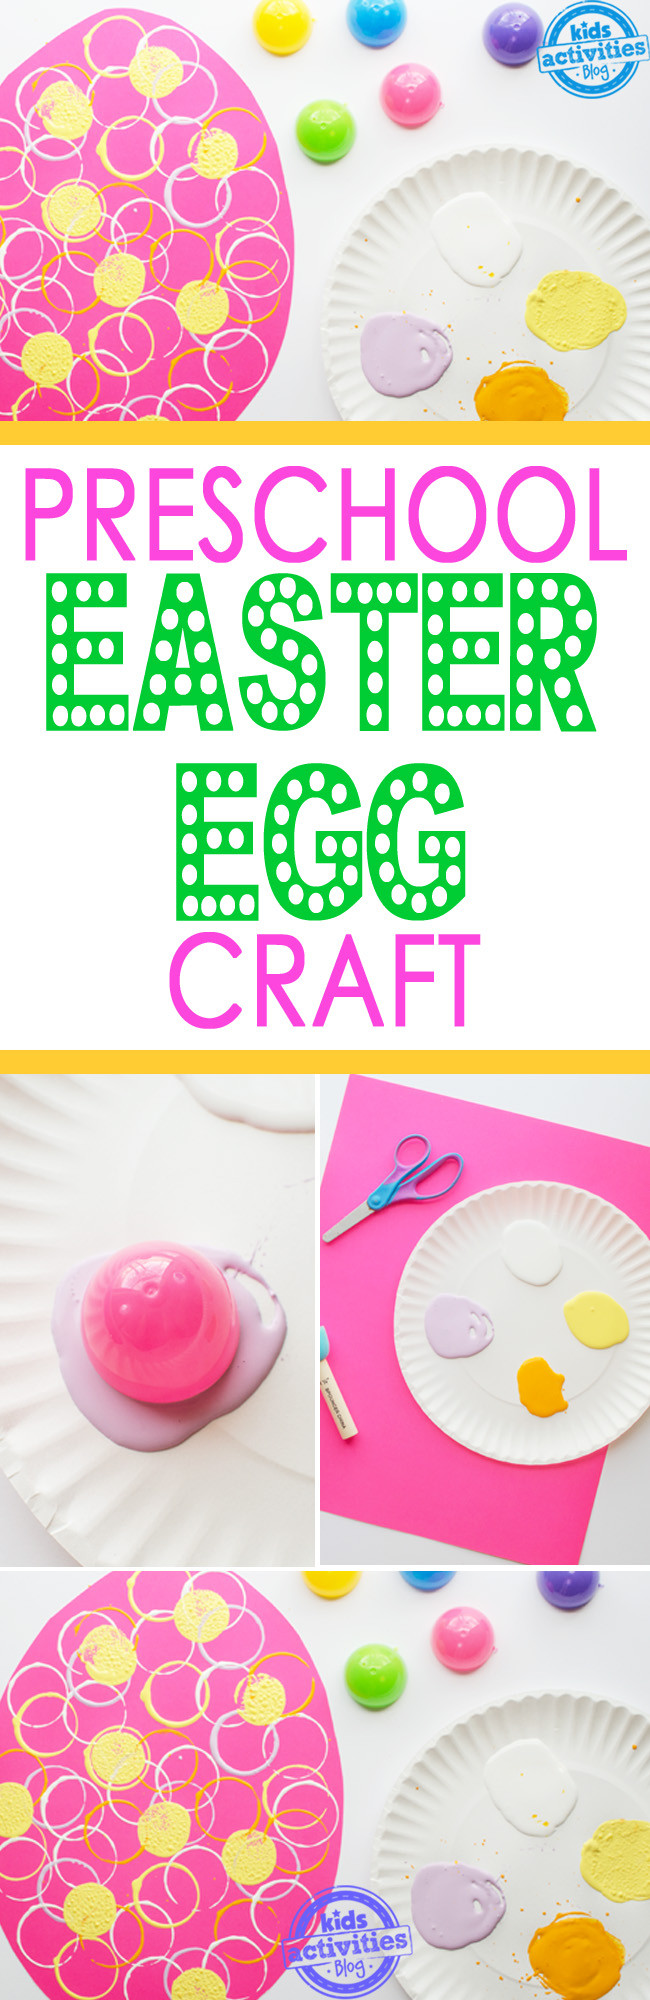 Easter Egg Crafts For Preschoolers
 Preschool Easter Egg Craft MAKE IT 